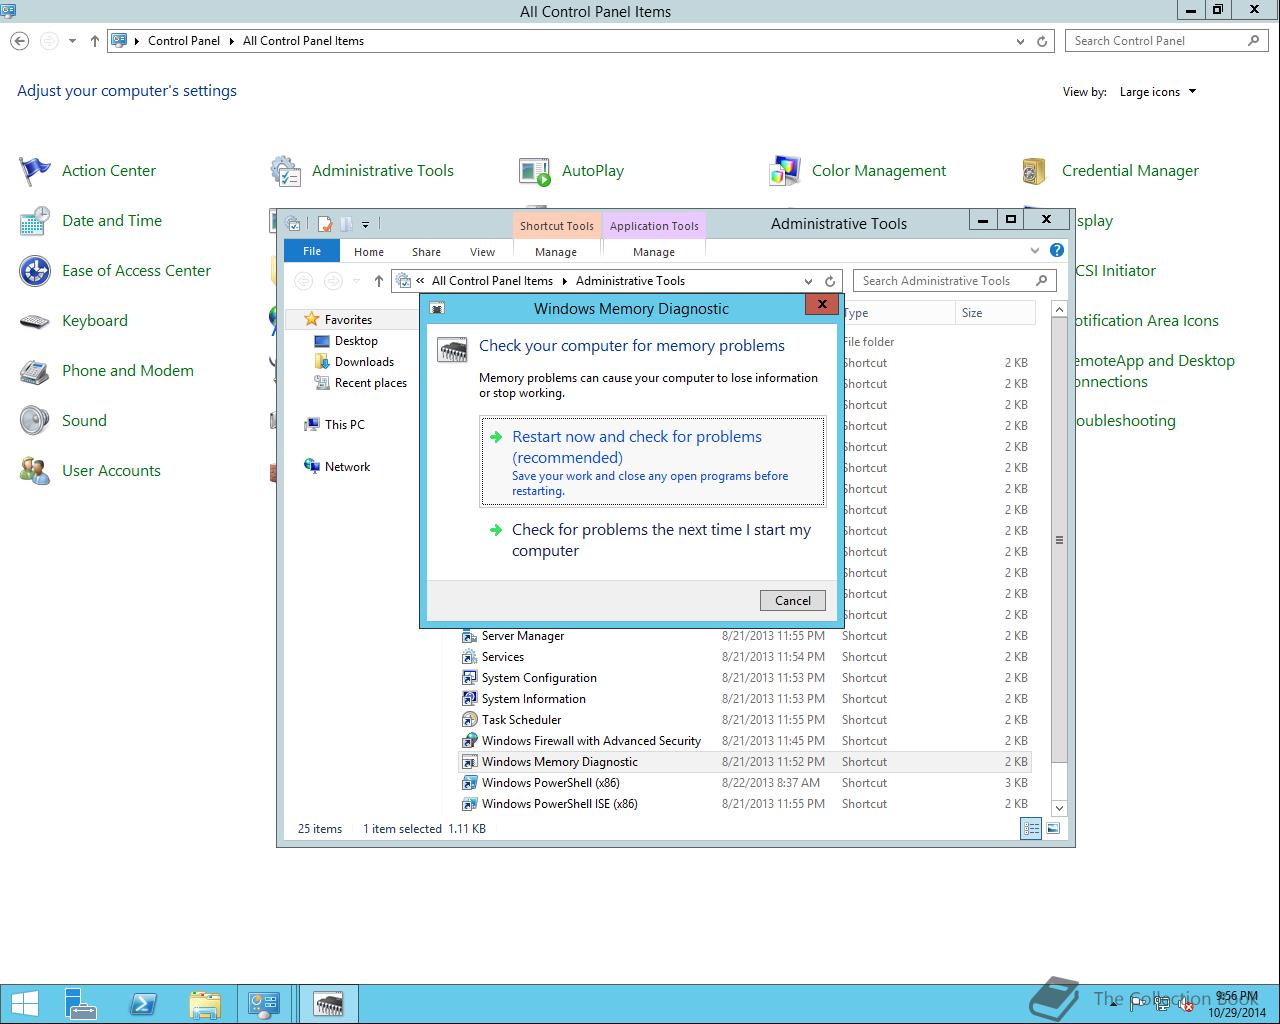 windows server 2012 r2 turkish language pack download